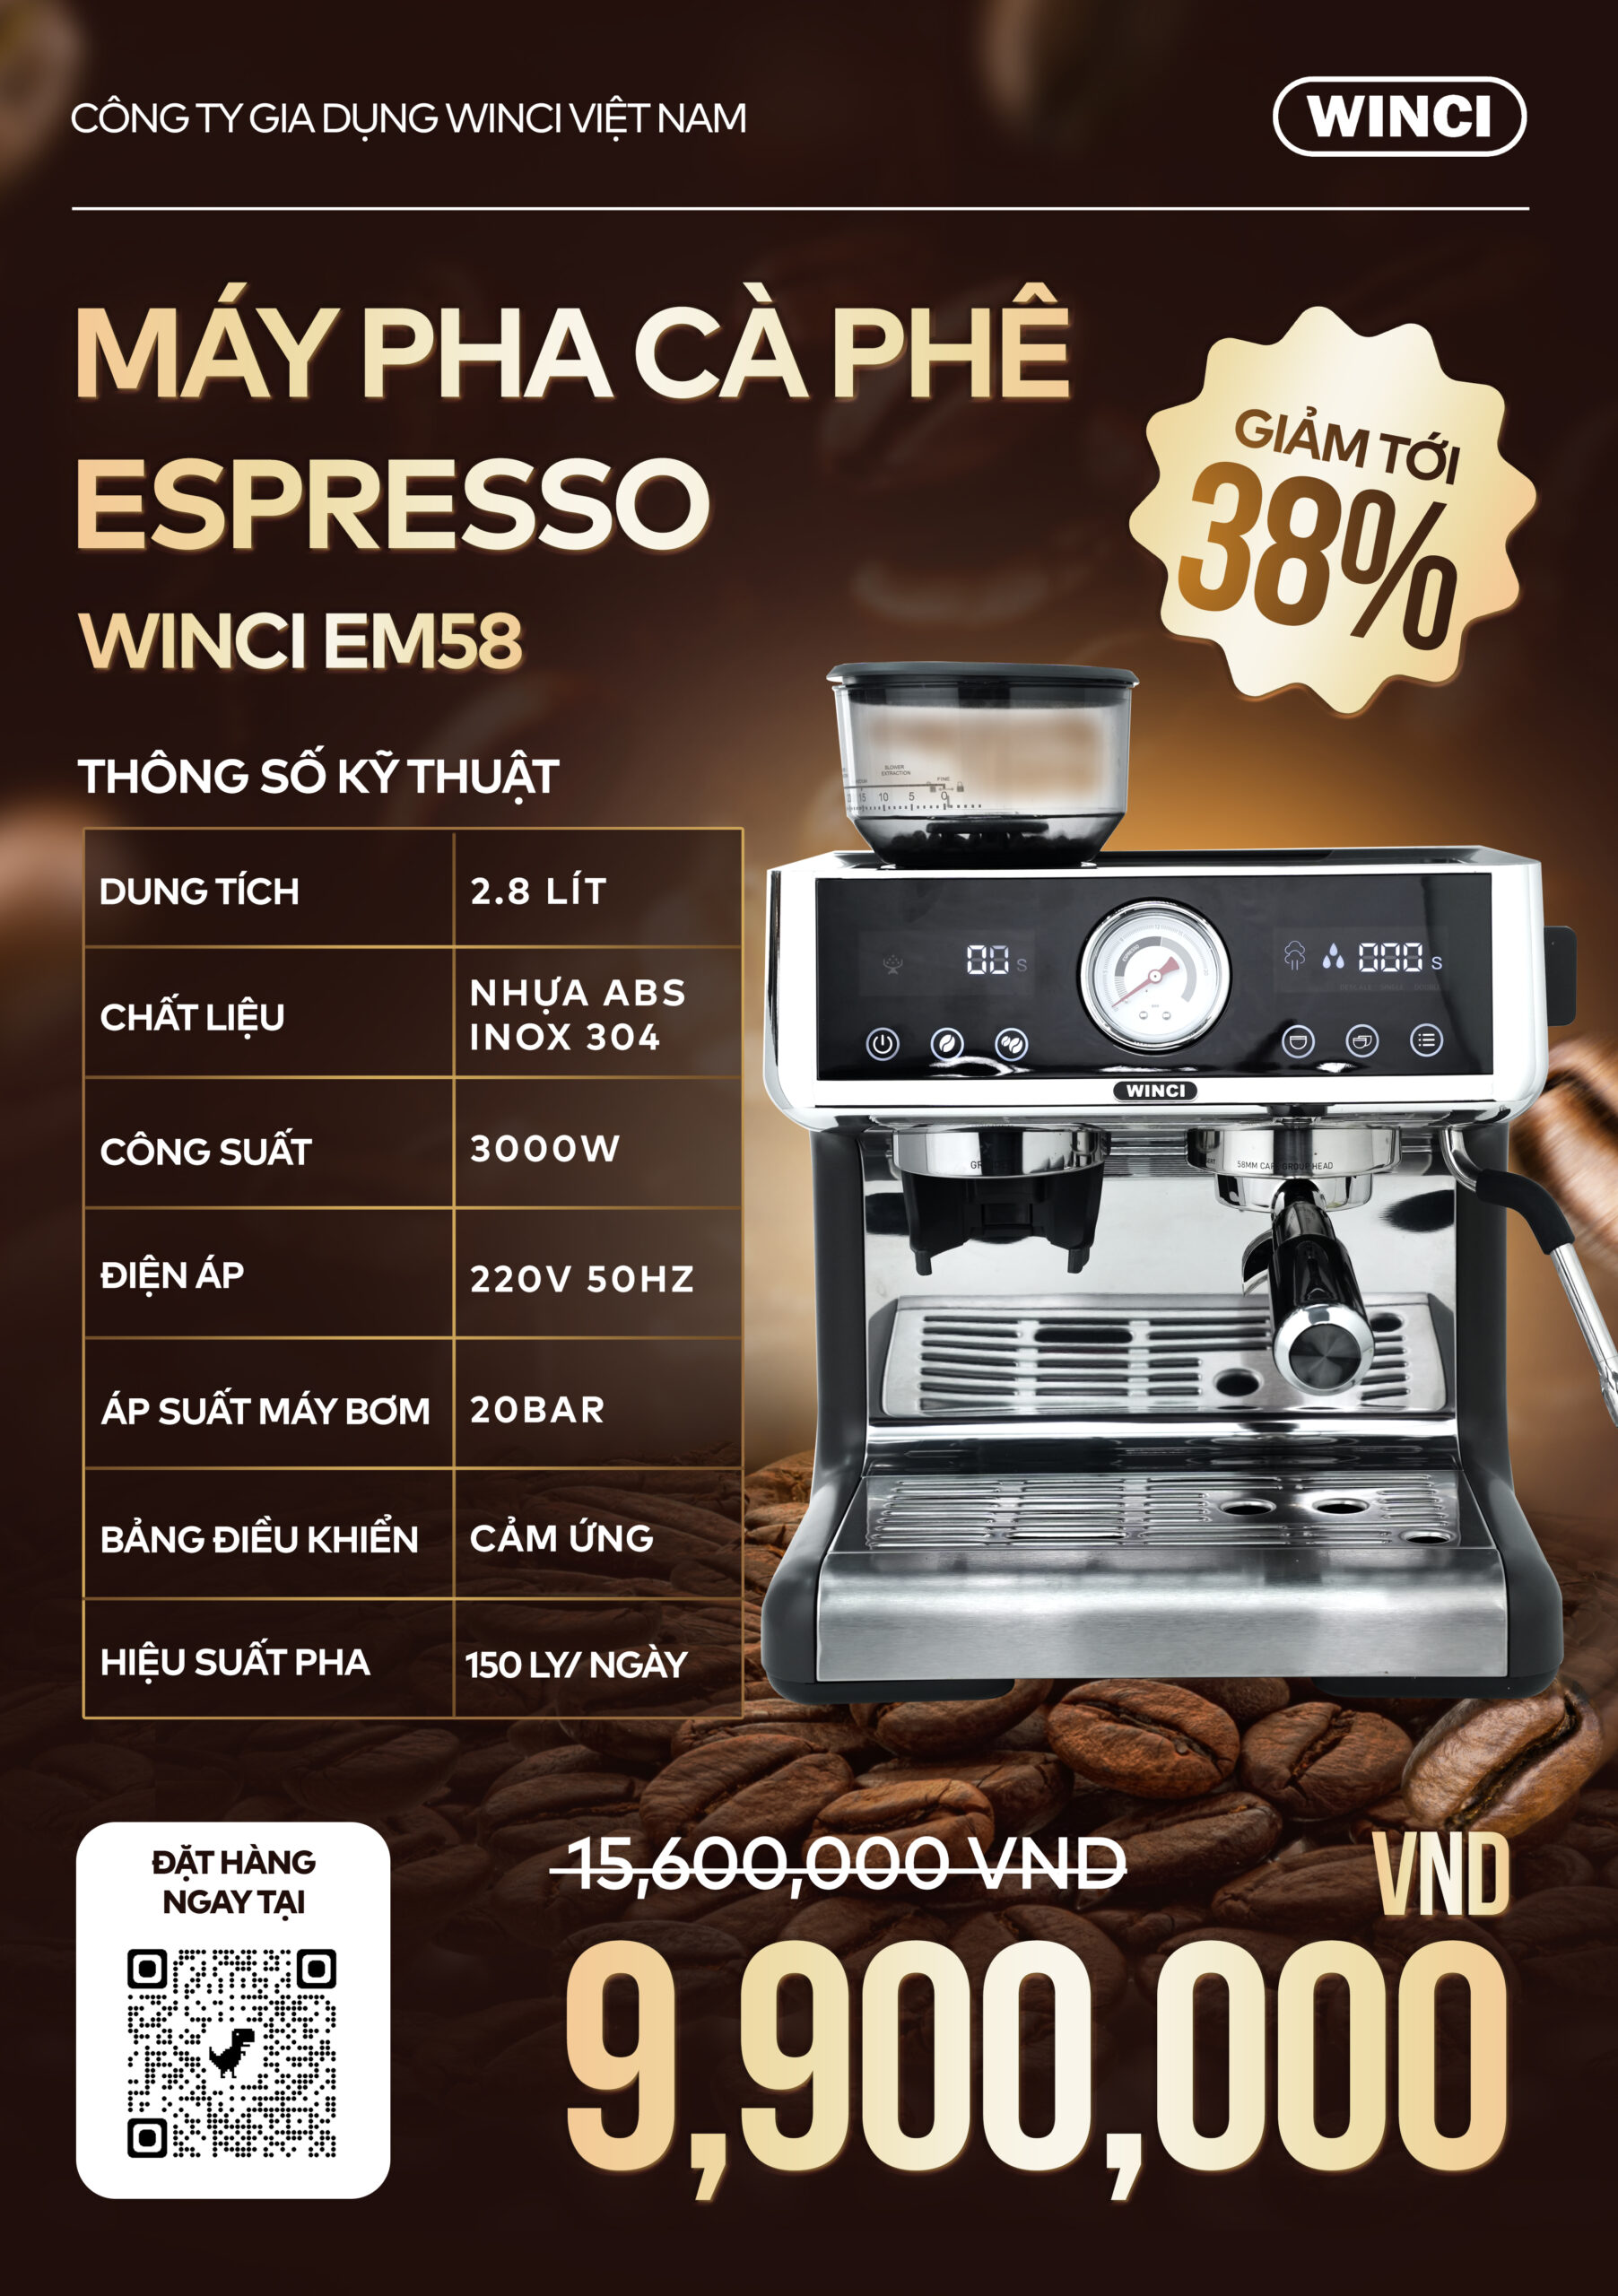 Máy pha cà phê Winci EM58